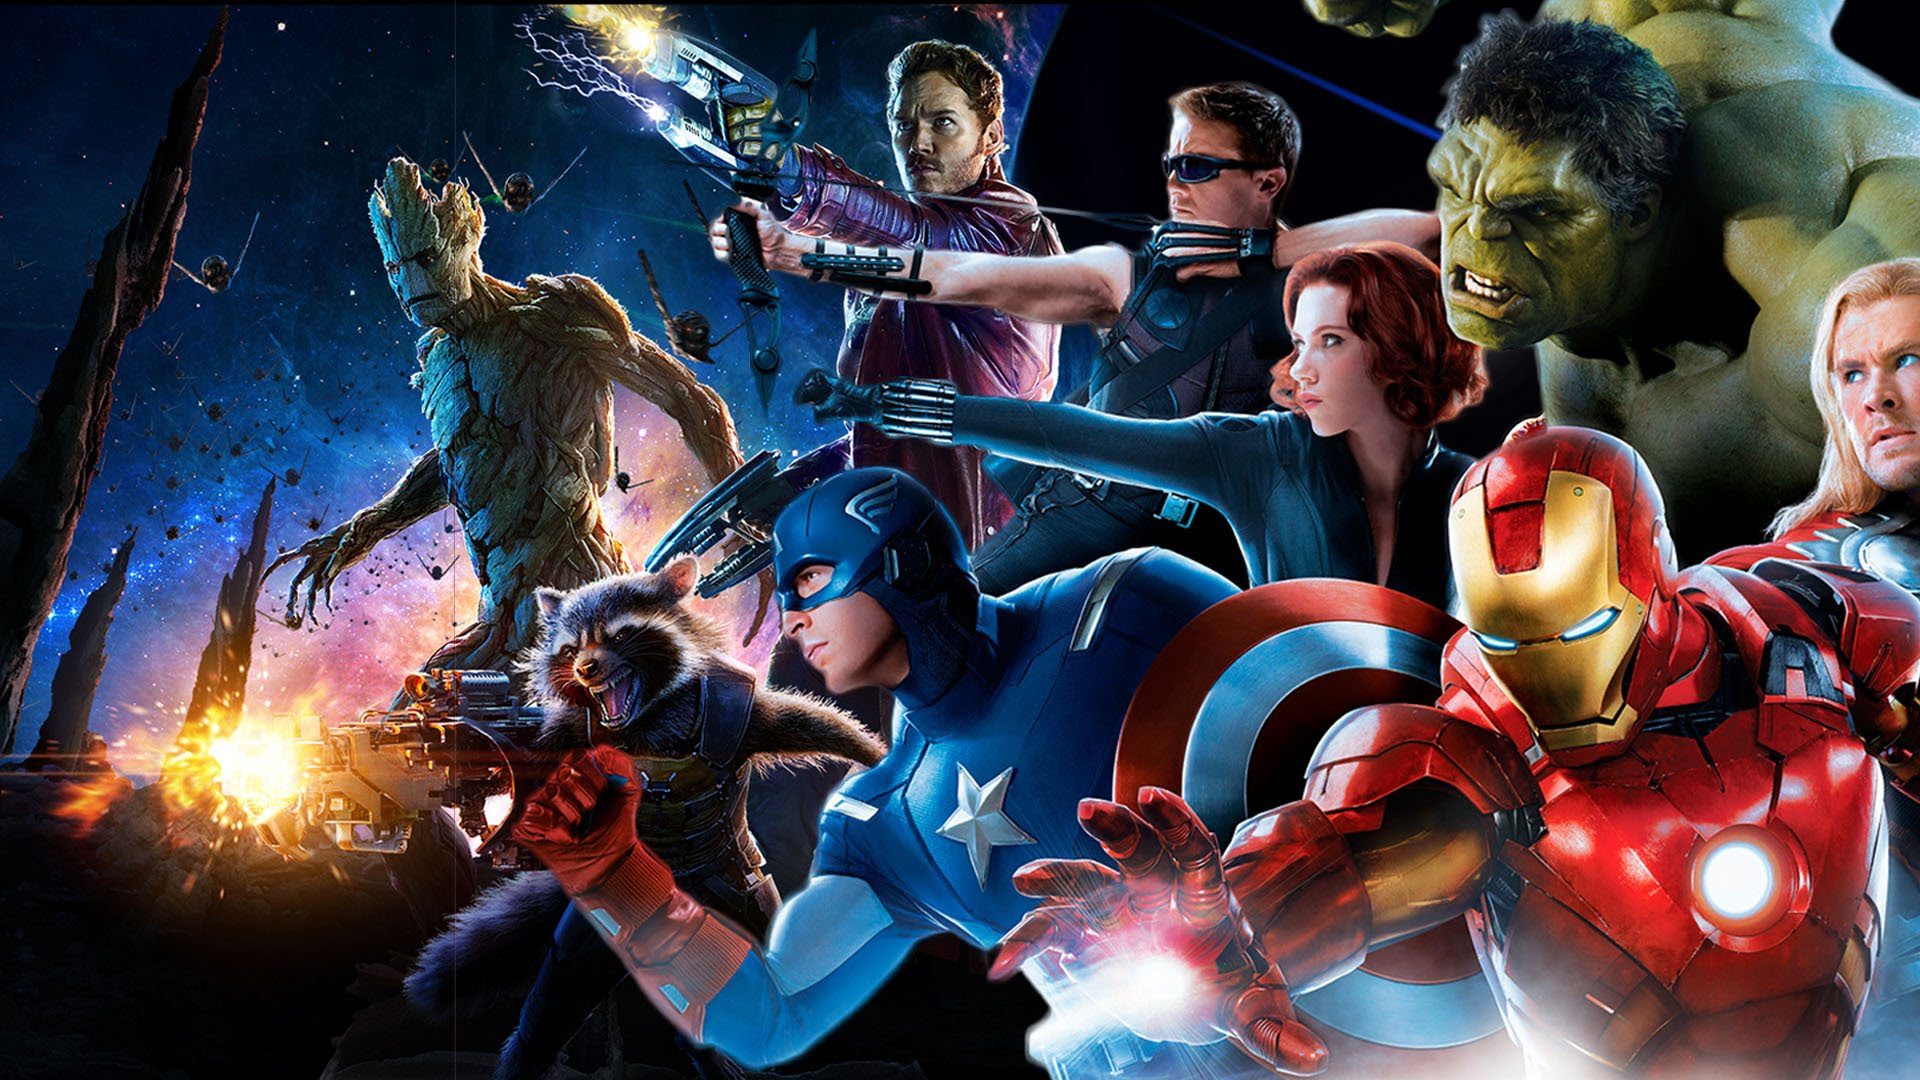 marvel avengers fondos de pantalla hd,juego de acción y aventura,héroe,personaje de ficción,superhéroe,película